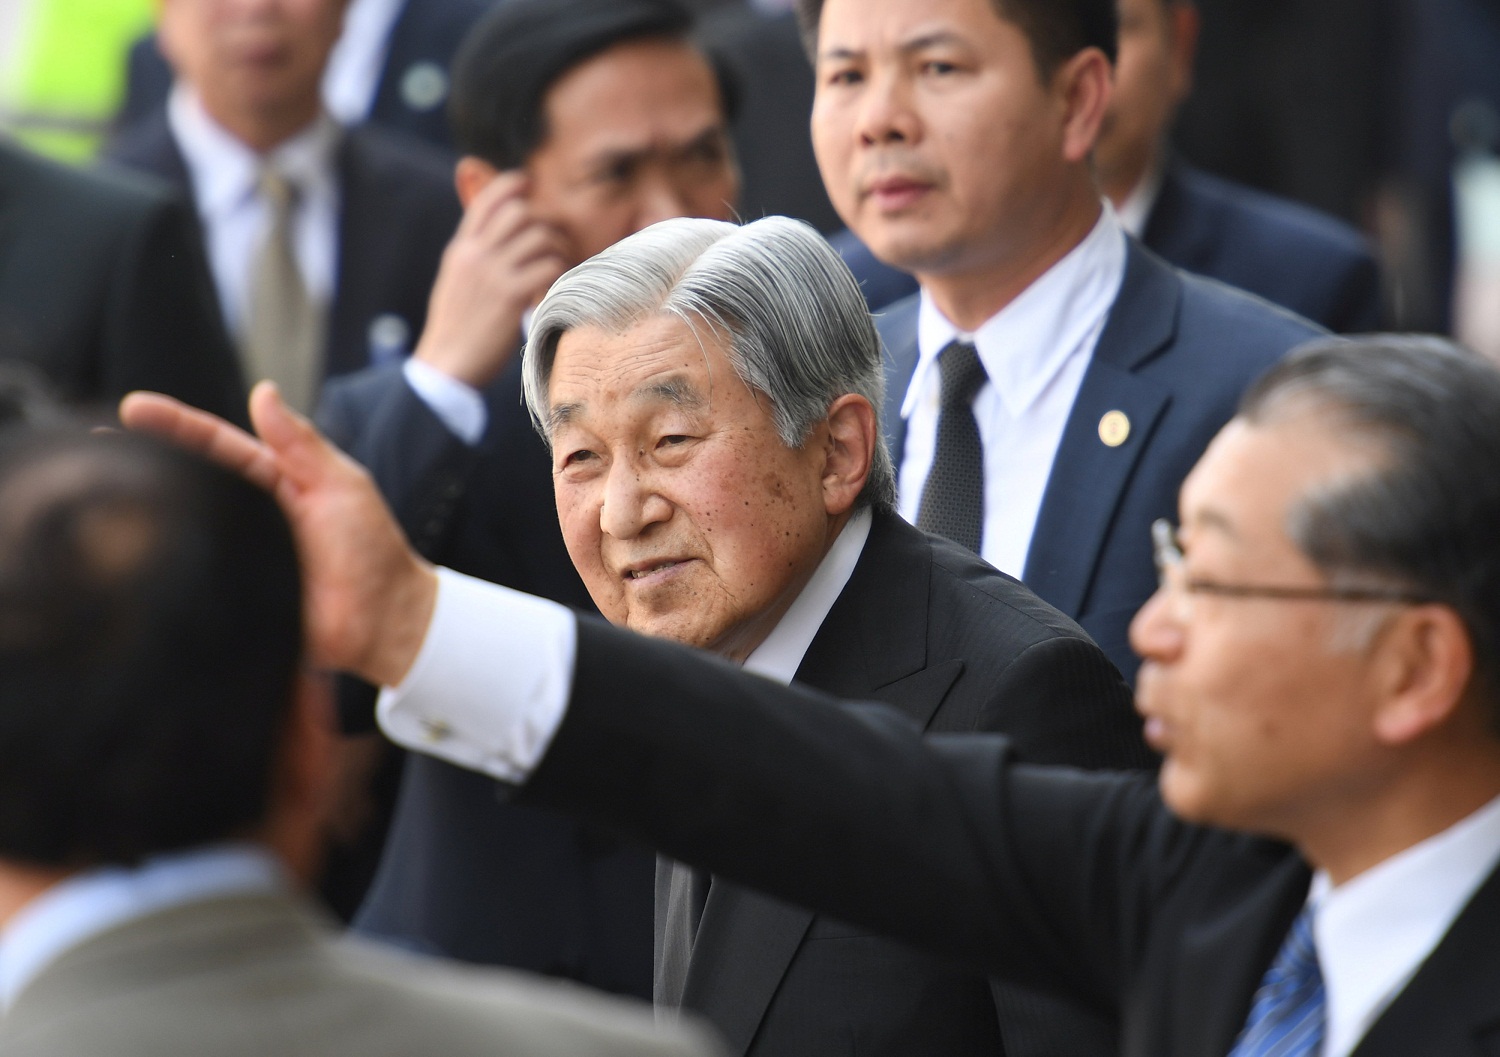 El emperador japonés Akihito pronuncia su último discurso de Año Nuevo